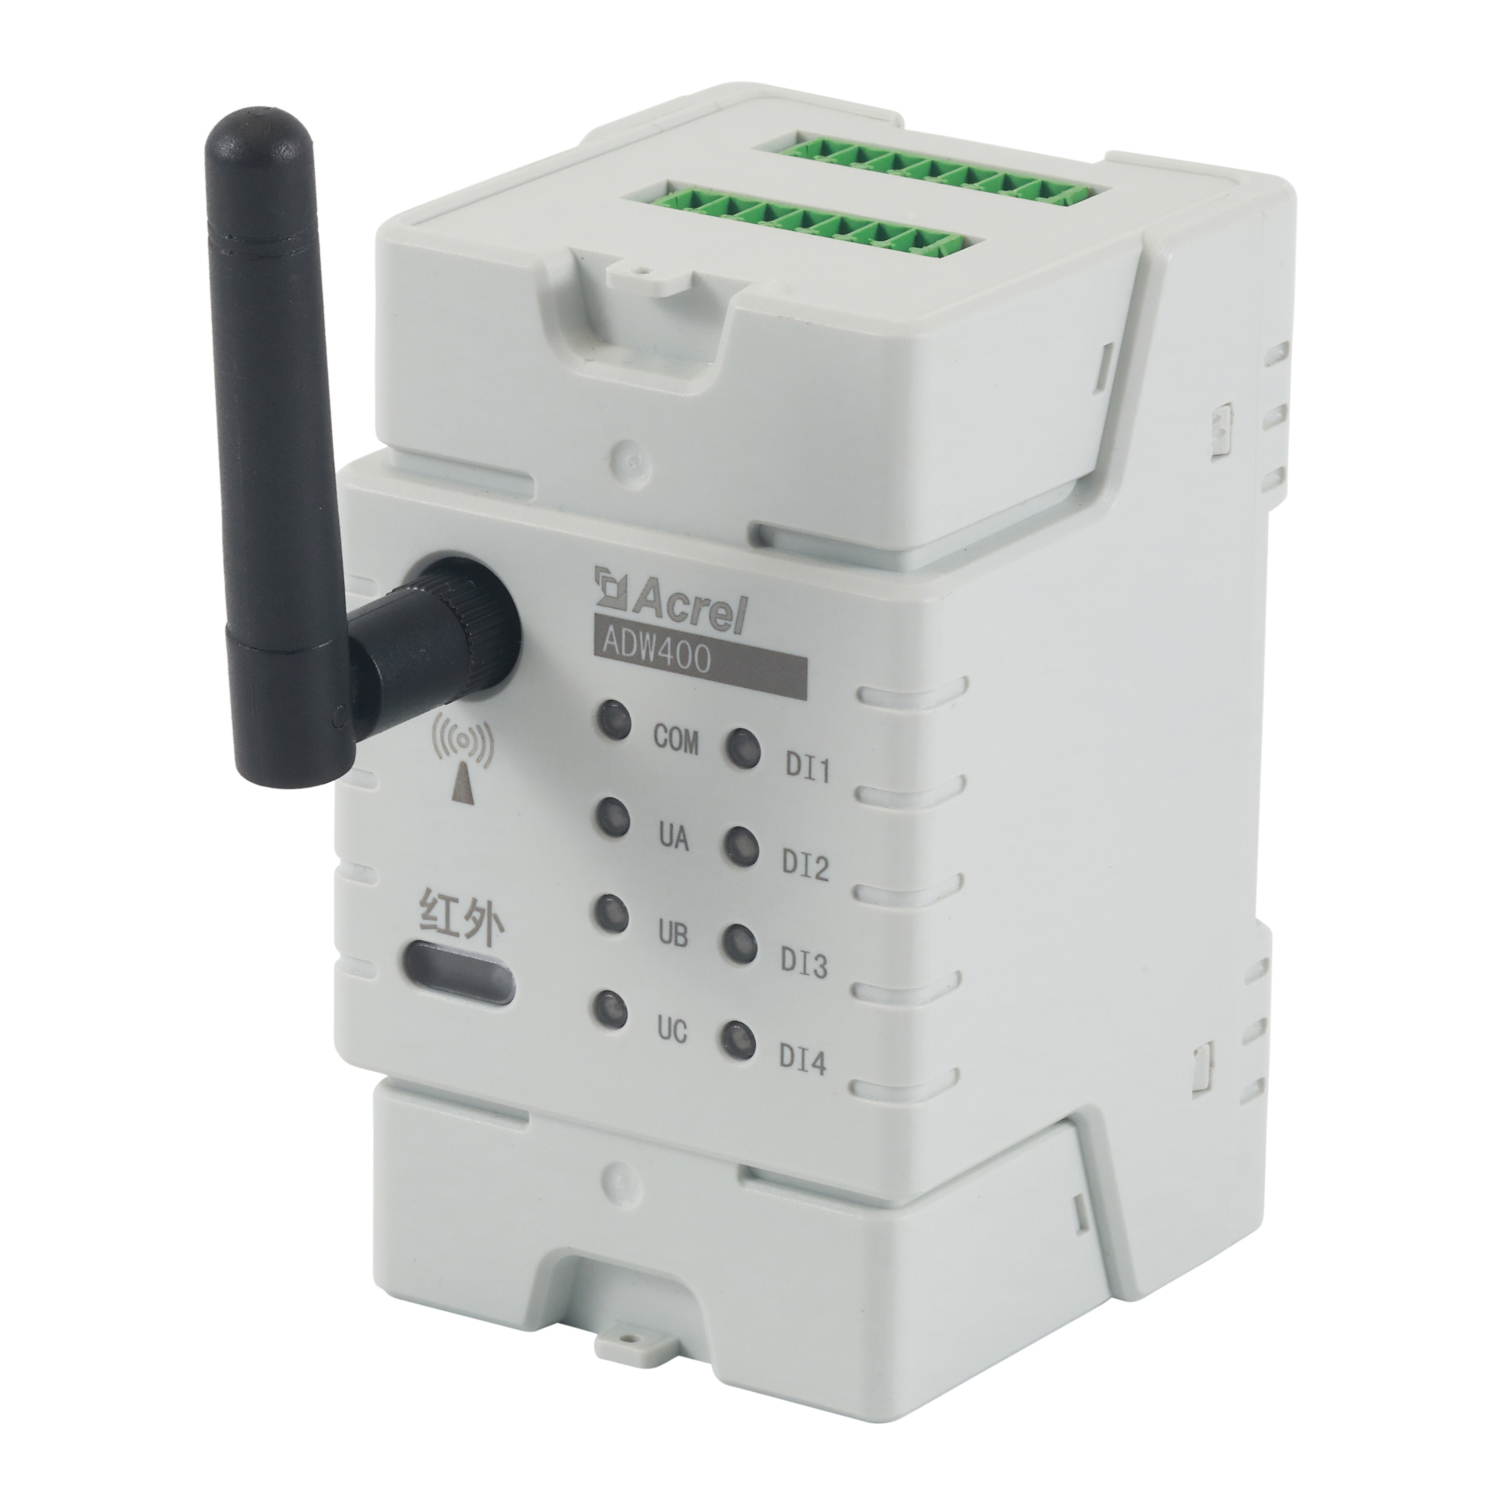 安科瑞ADW400-D10-3S环保监测模块3路三相环保用电监管平台